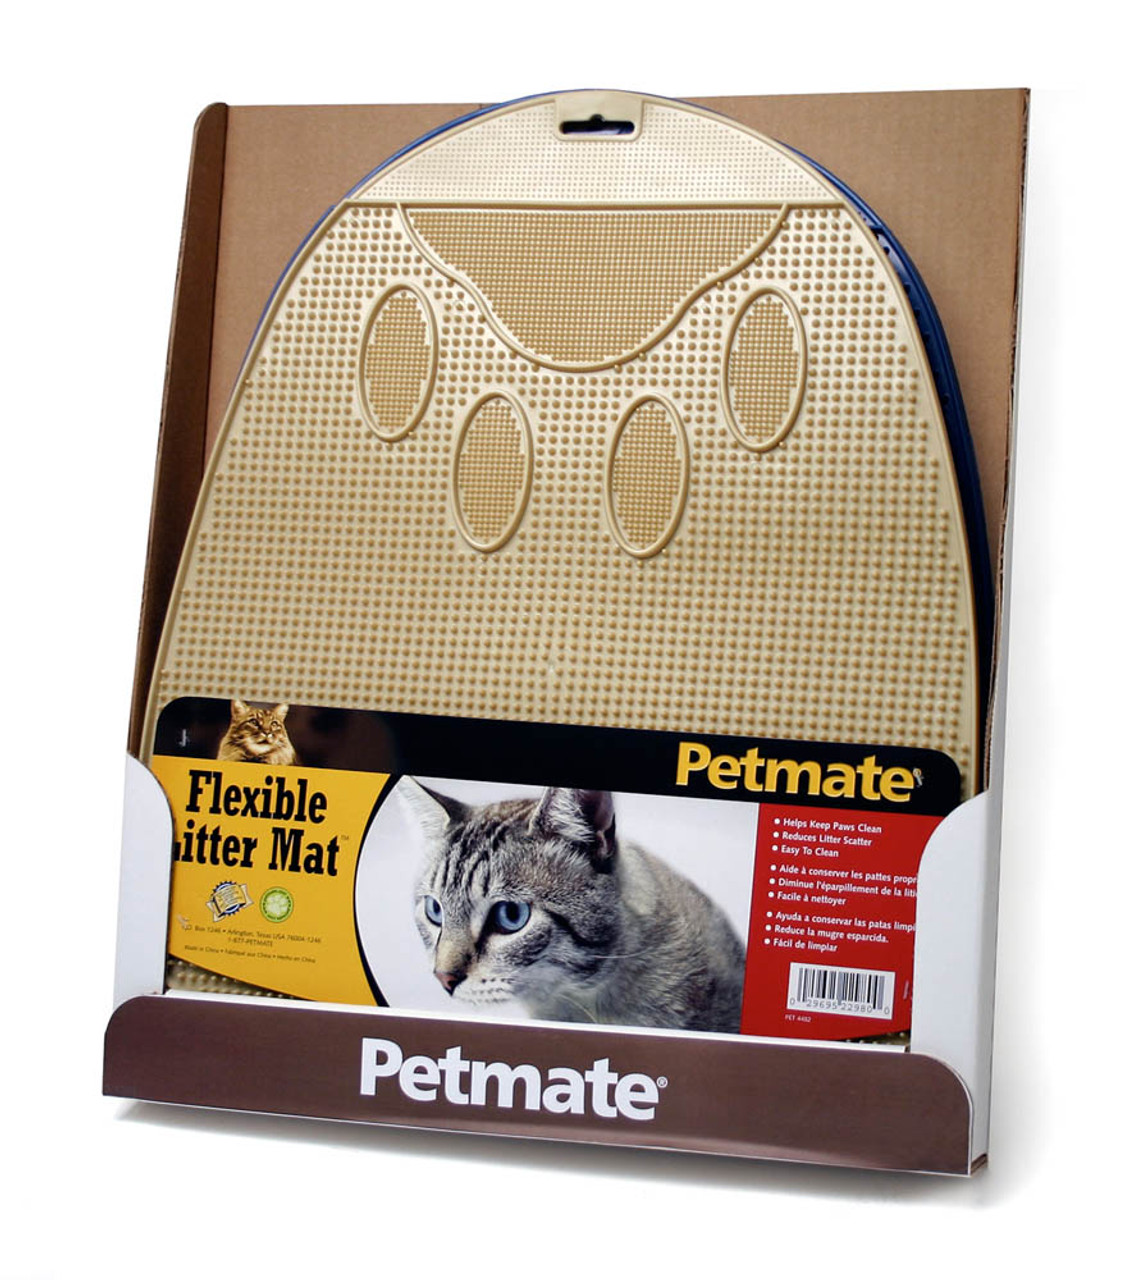 Petmate Extra Large Litter Catcher Mat